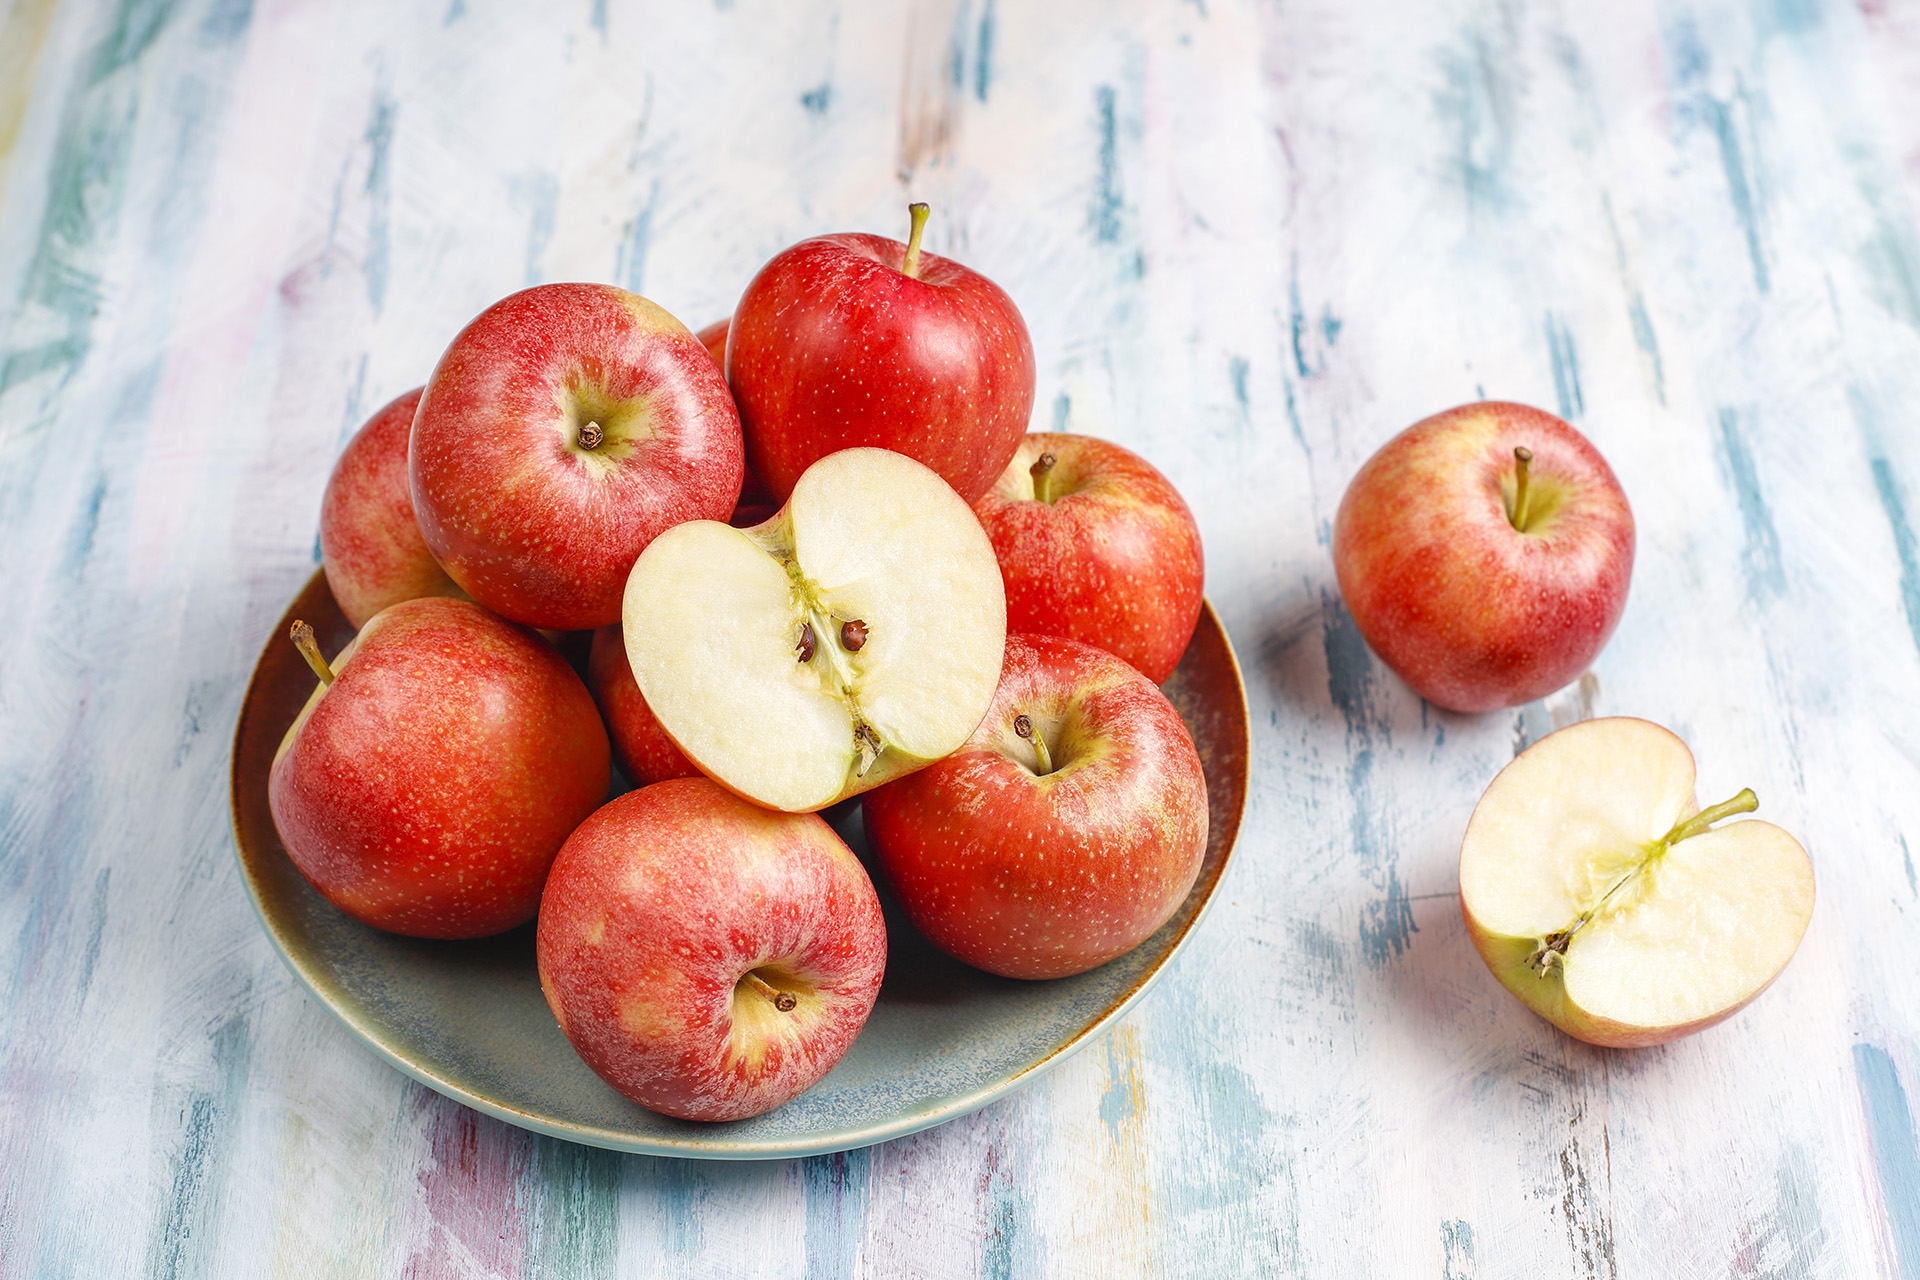 Яблоки без косточек. Красное яблоко очень сочное. Энви яблоки. Фото jpeg яблоки Делишес мест.